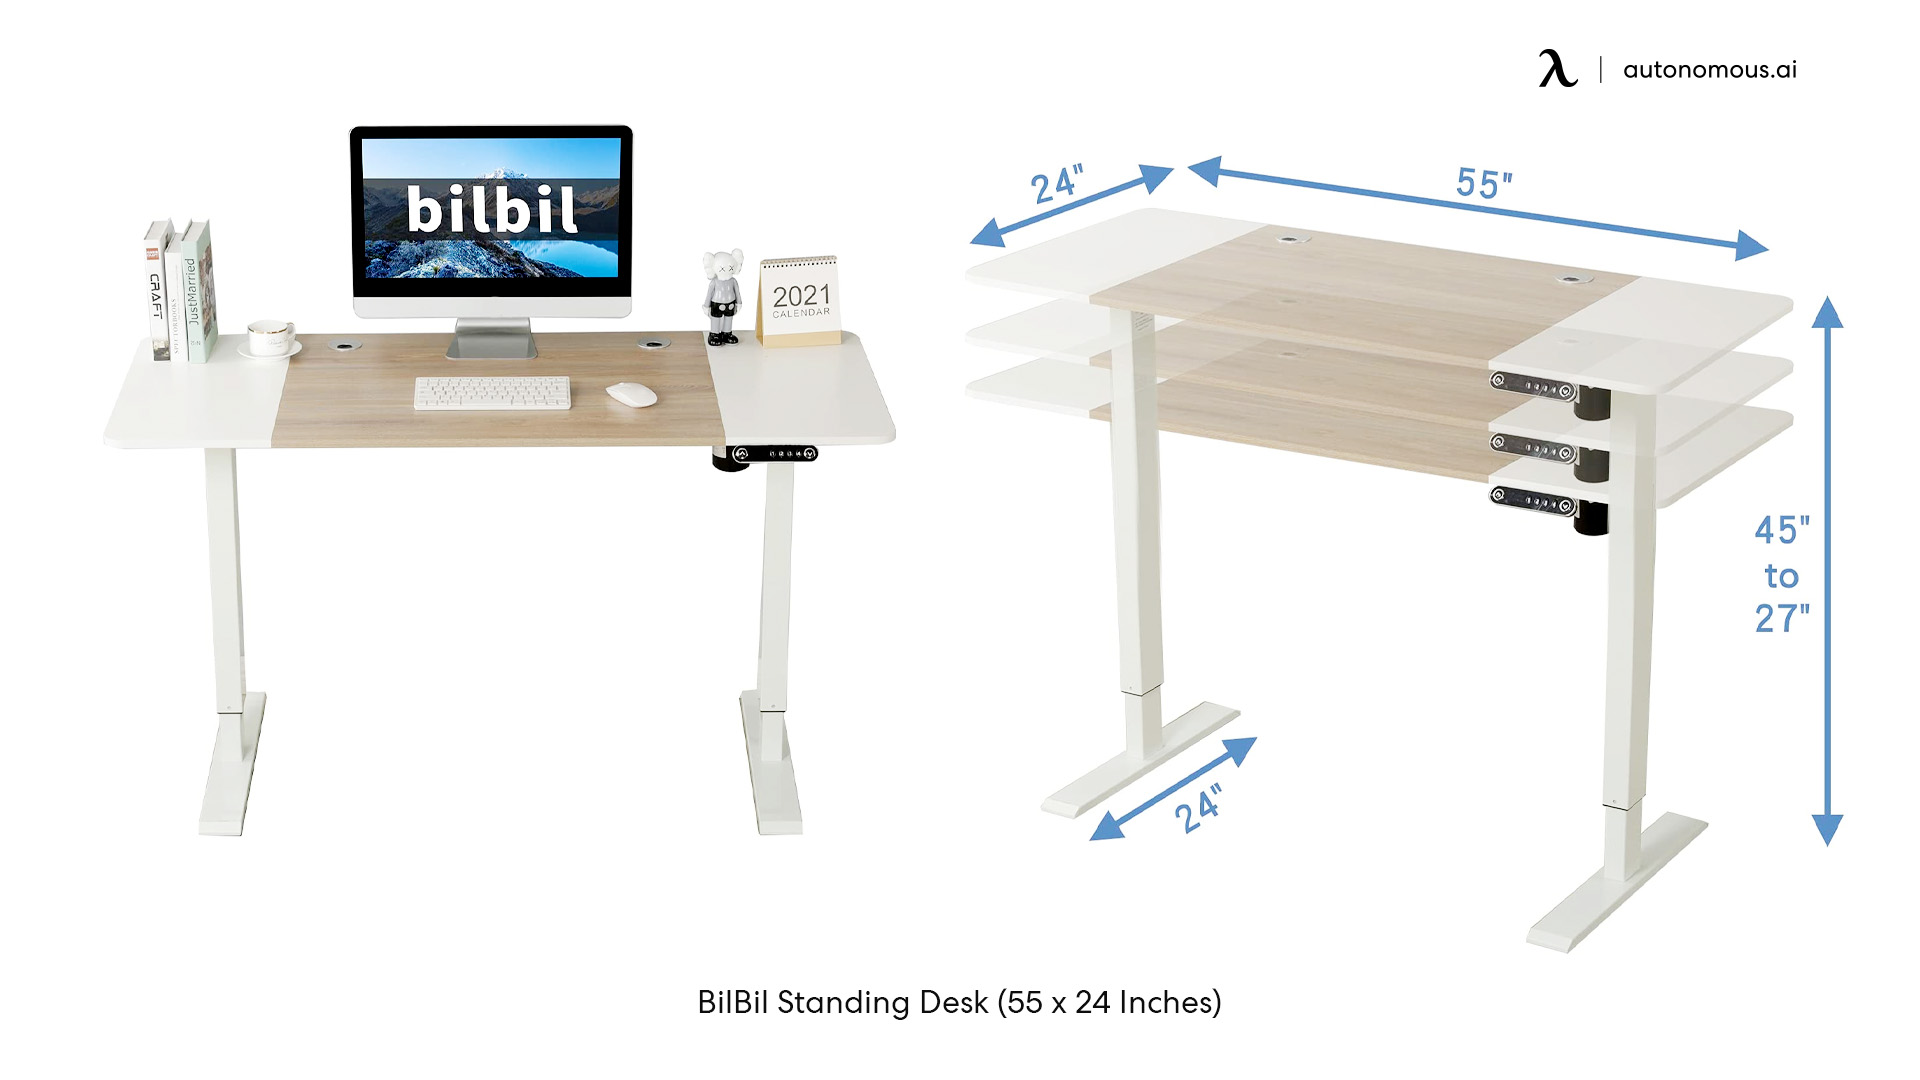 BilBil Standing Desk